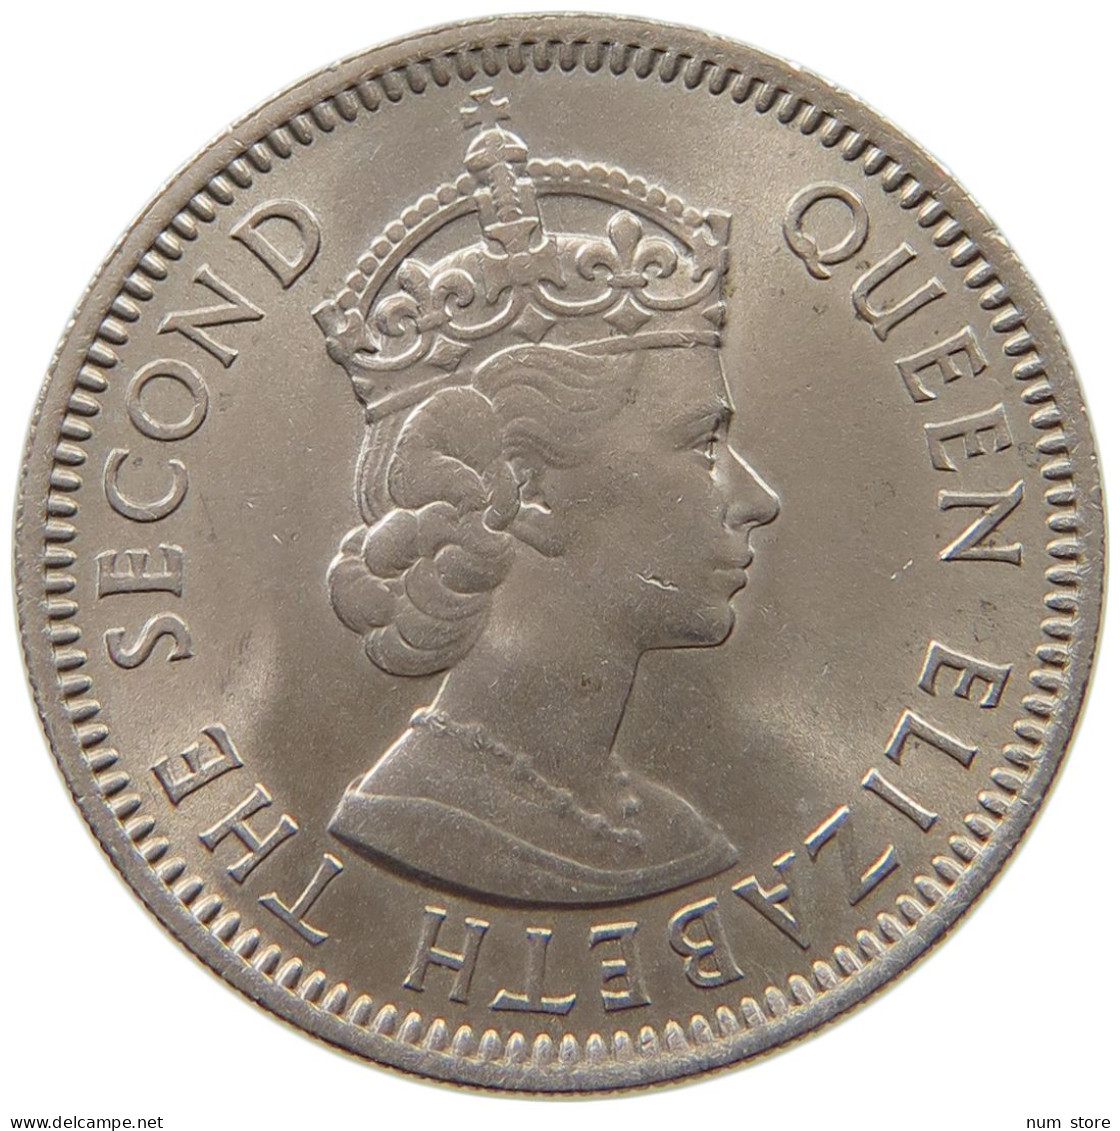 BRITISH CARIBBEAN TERRITORIES 25 CENTS 1965 Elizabeth II. (1952-2022) #s037 0255 - British Caribbean Territories